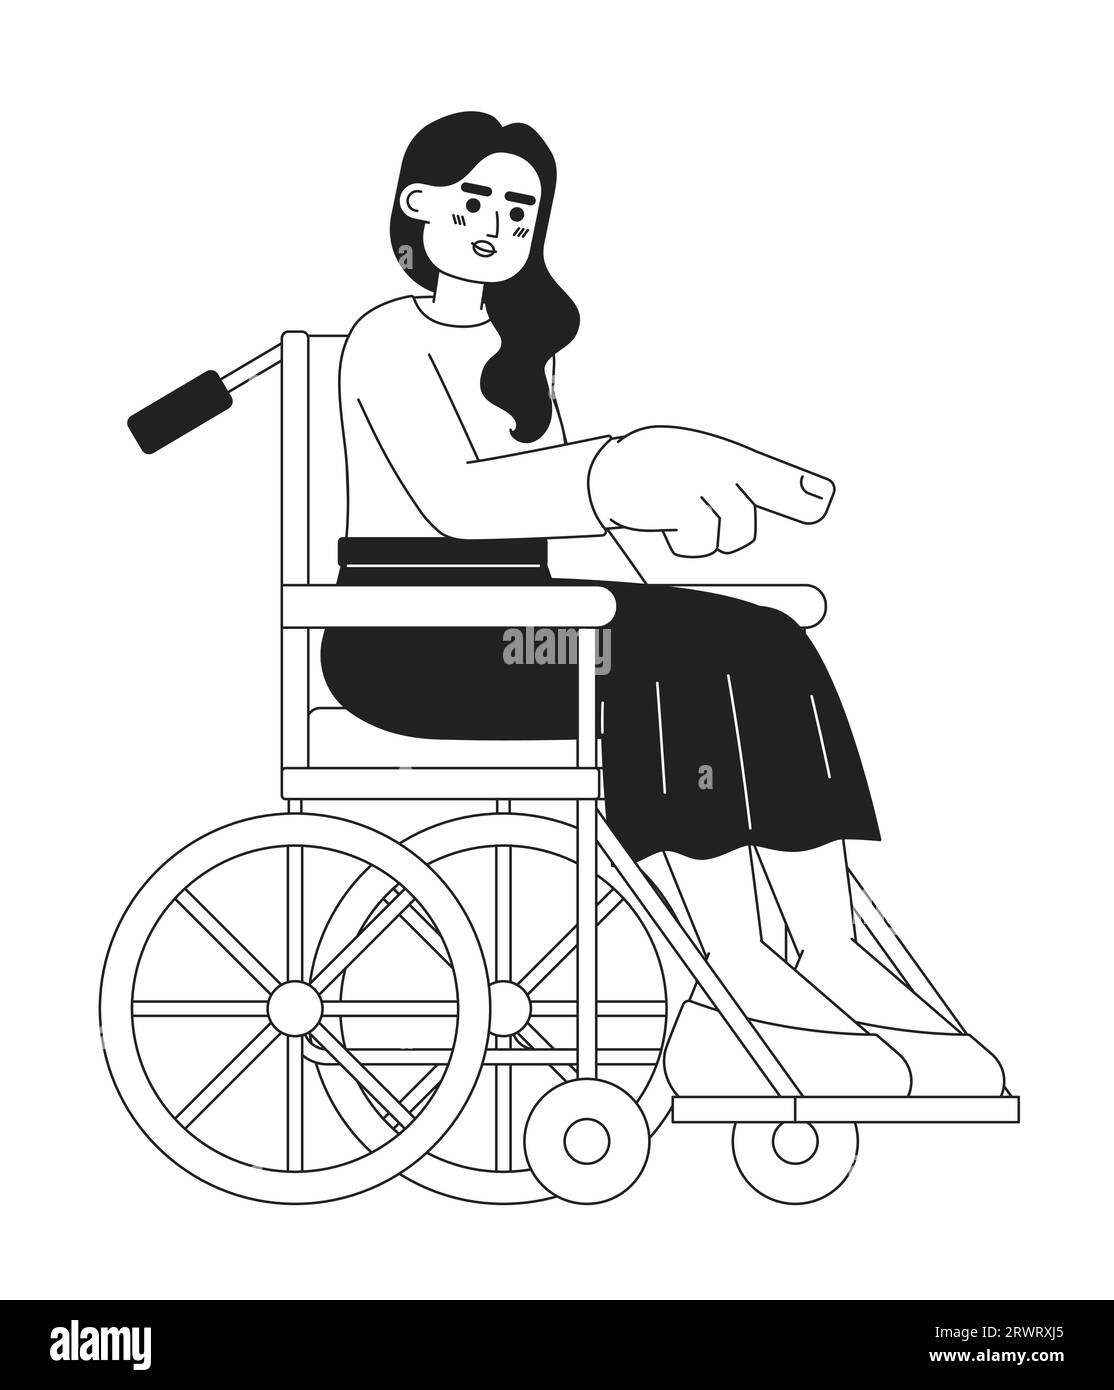 Rollstuhljunge Frau, die mit dem Finger auf eine schwarz-weiße 2D-Zeichentrickfigur zeigt Stock Vektor